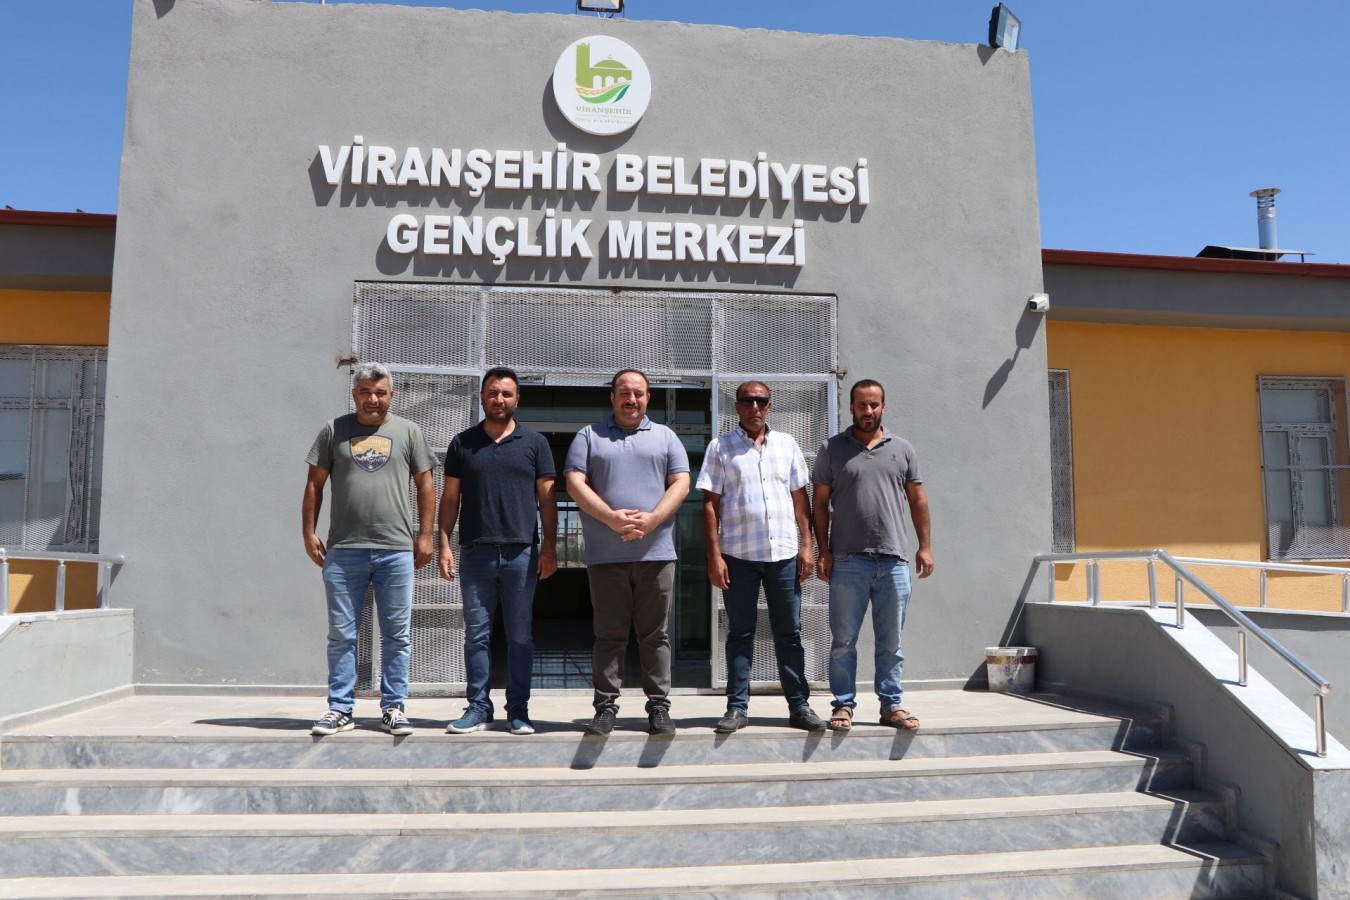 Viranşehir’e yeni gençlik merkezi;